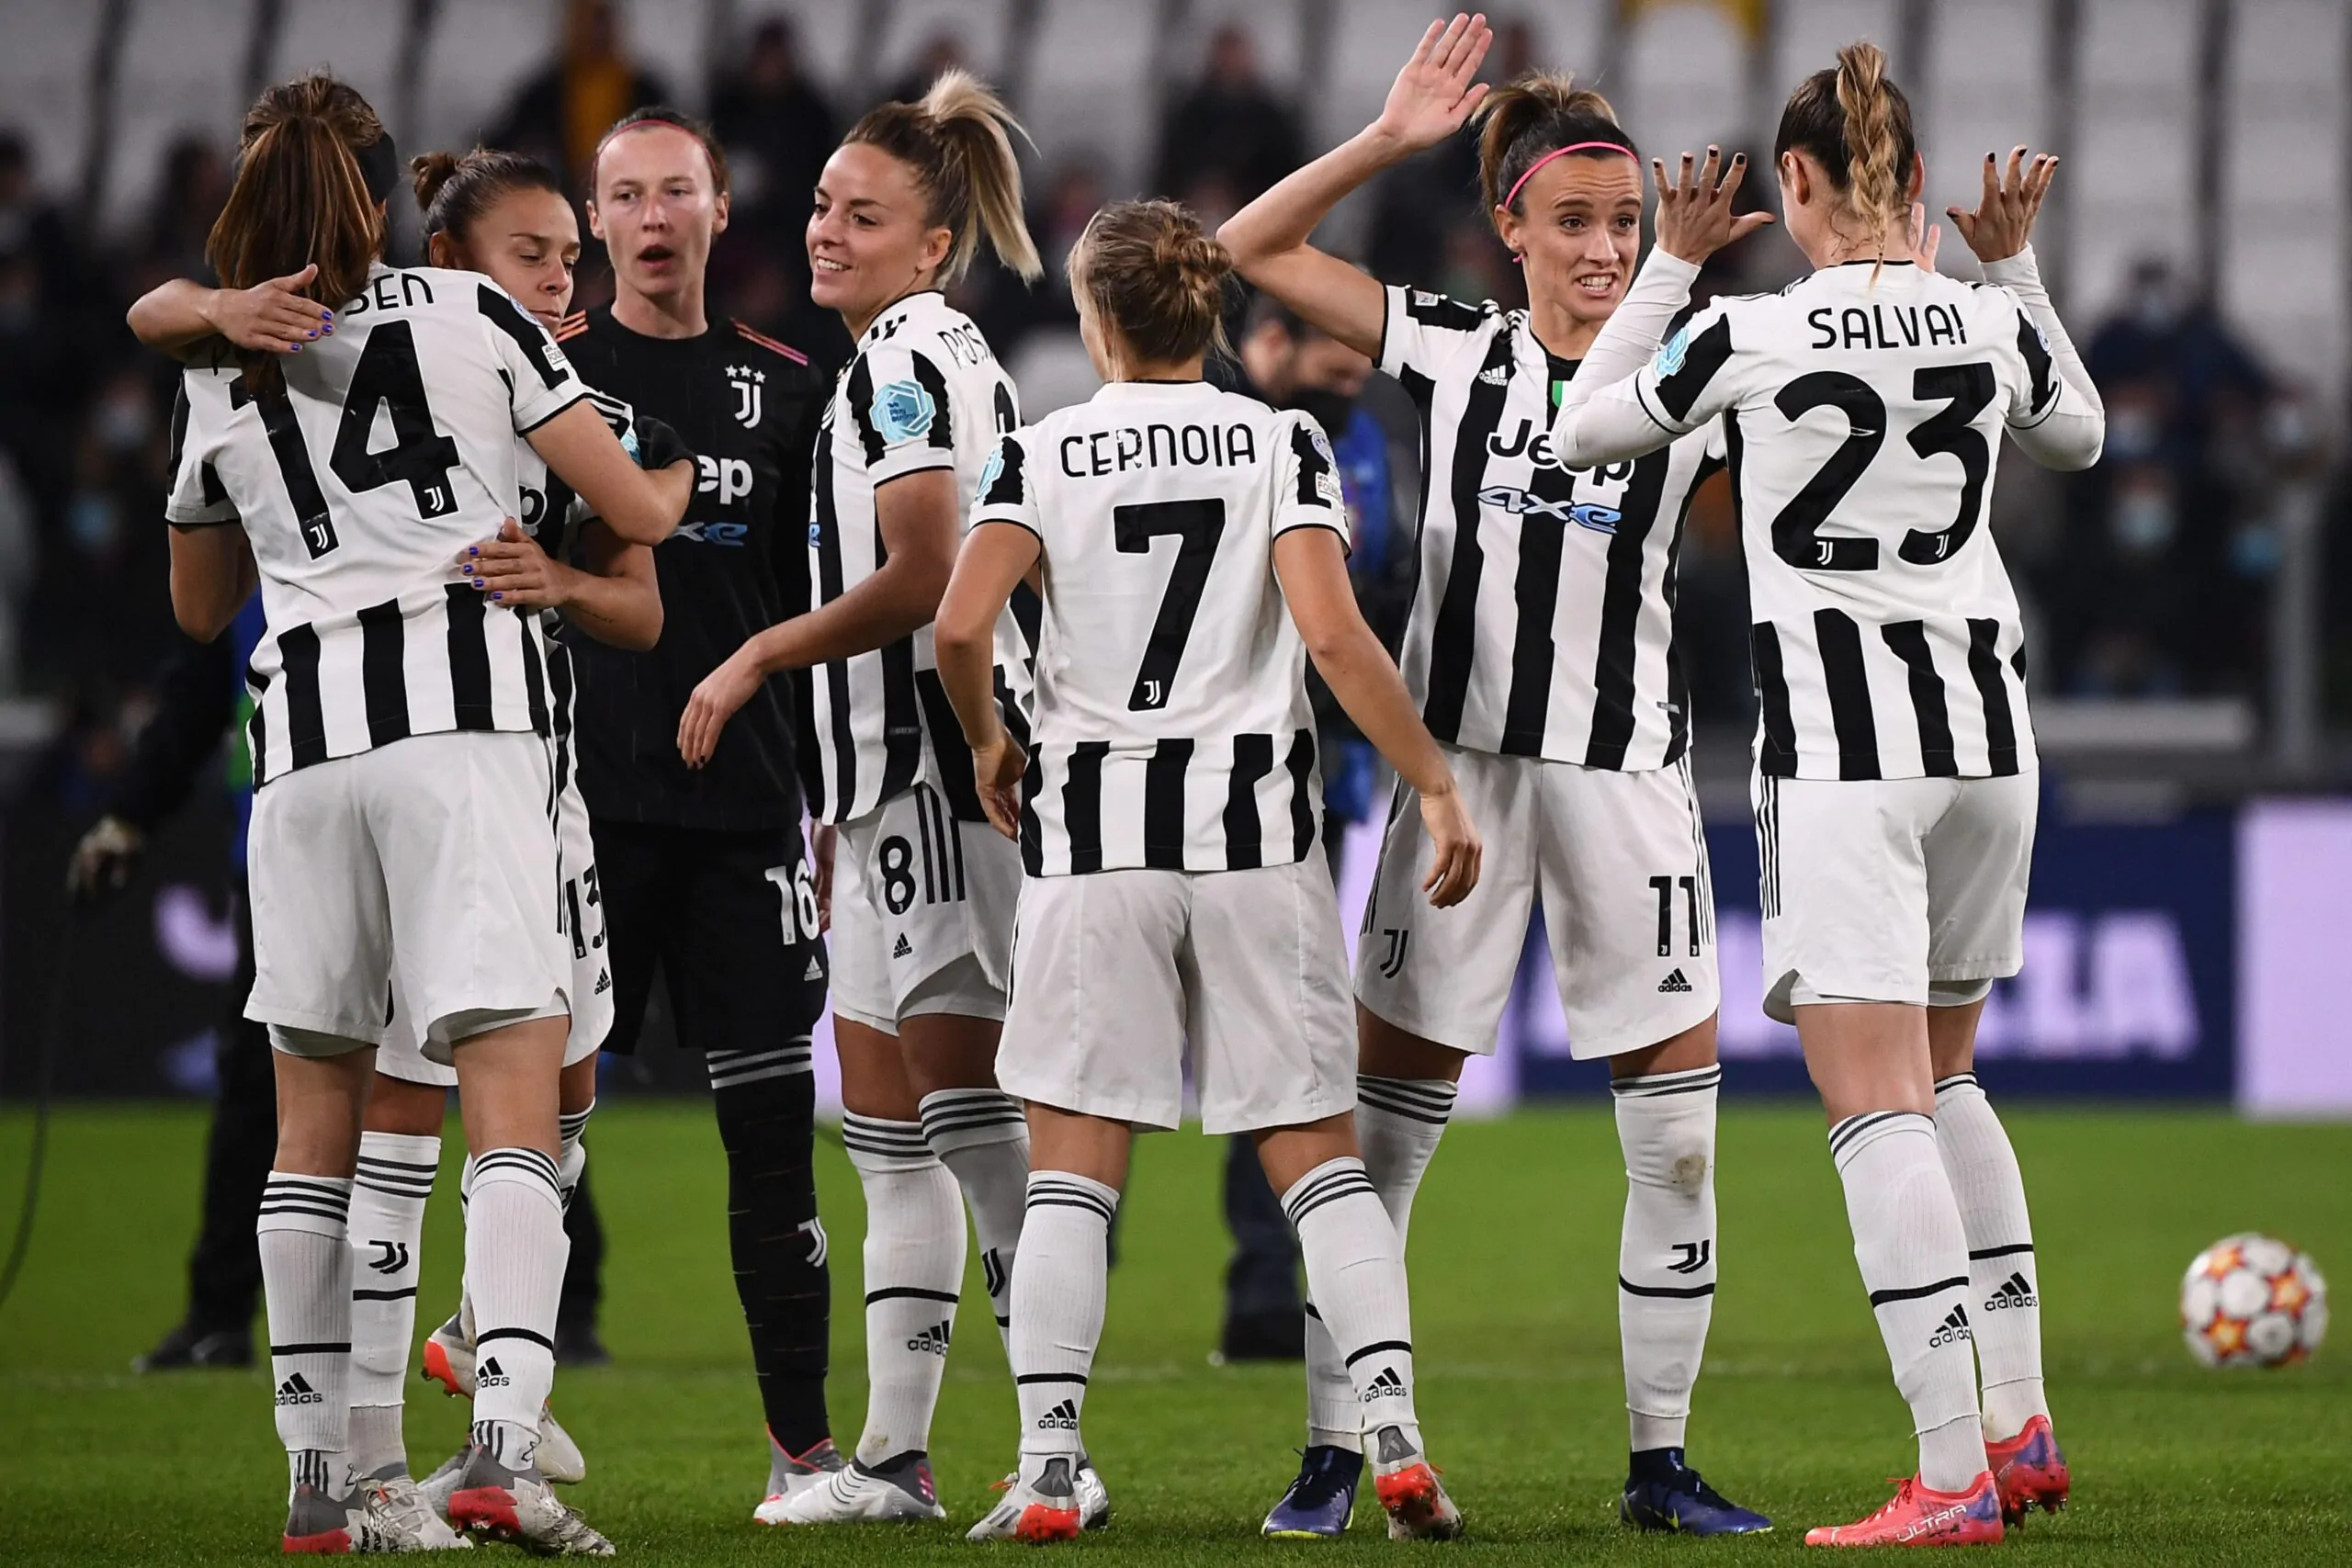 Sorteggi Champions League femminile, le avversarie della Juventus: girone di ferro!